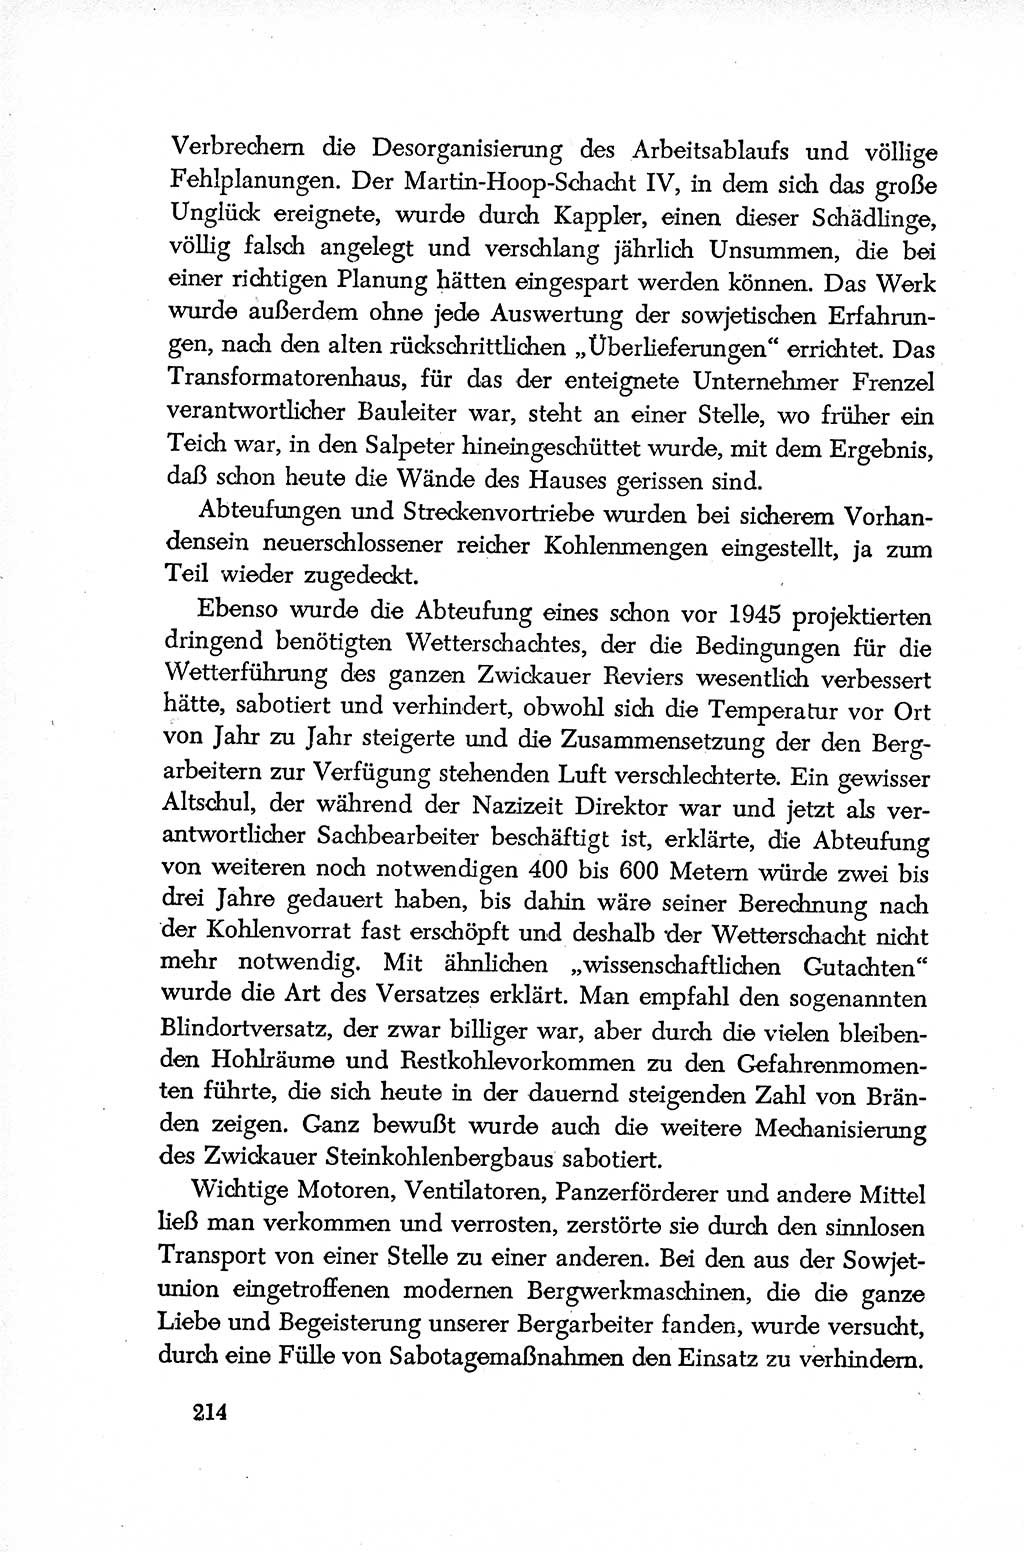 Dokumente der Sozialistischen Einheitspartei Deutschlands (SED) [Deutsche Demokratische Republik (DDR)] 1952-1953, Seite 214 (Dok. SED DDR 1952-1953, S. 214)